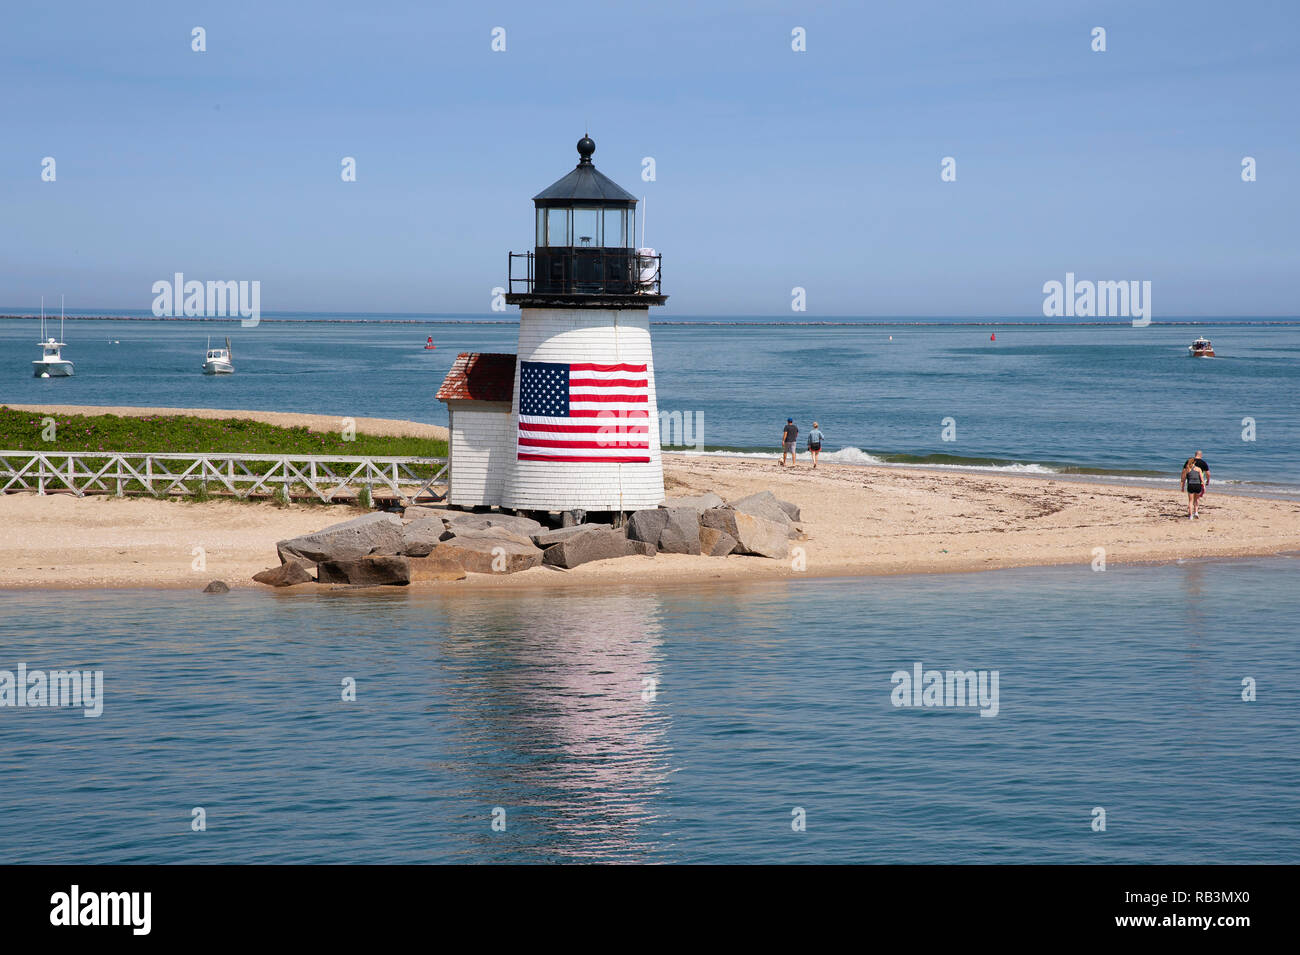 Brant Point Lighthouse sur l'île de Nantucket a un drapeau américain enveloppé arount la tour de l'accueil des visiteurs à cette île Masschusetts. C'est un favori Banque D'Images